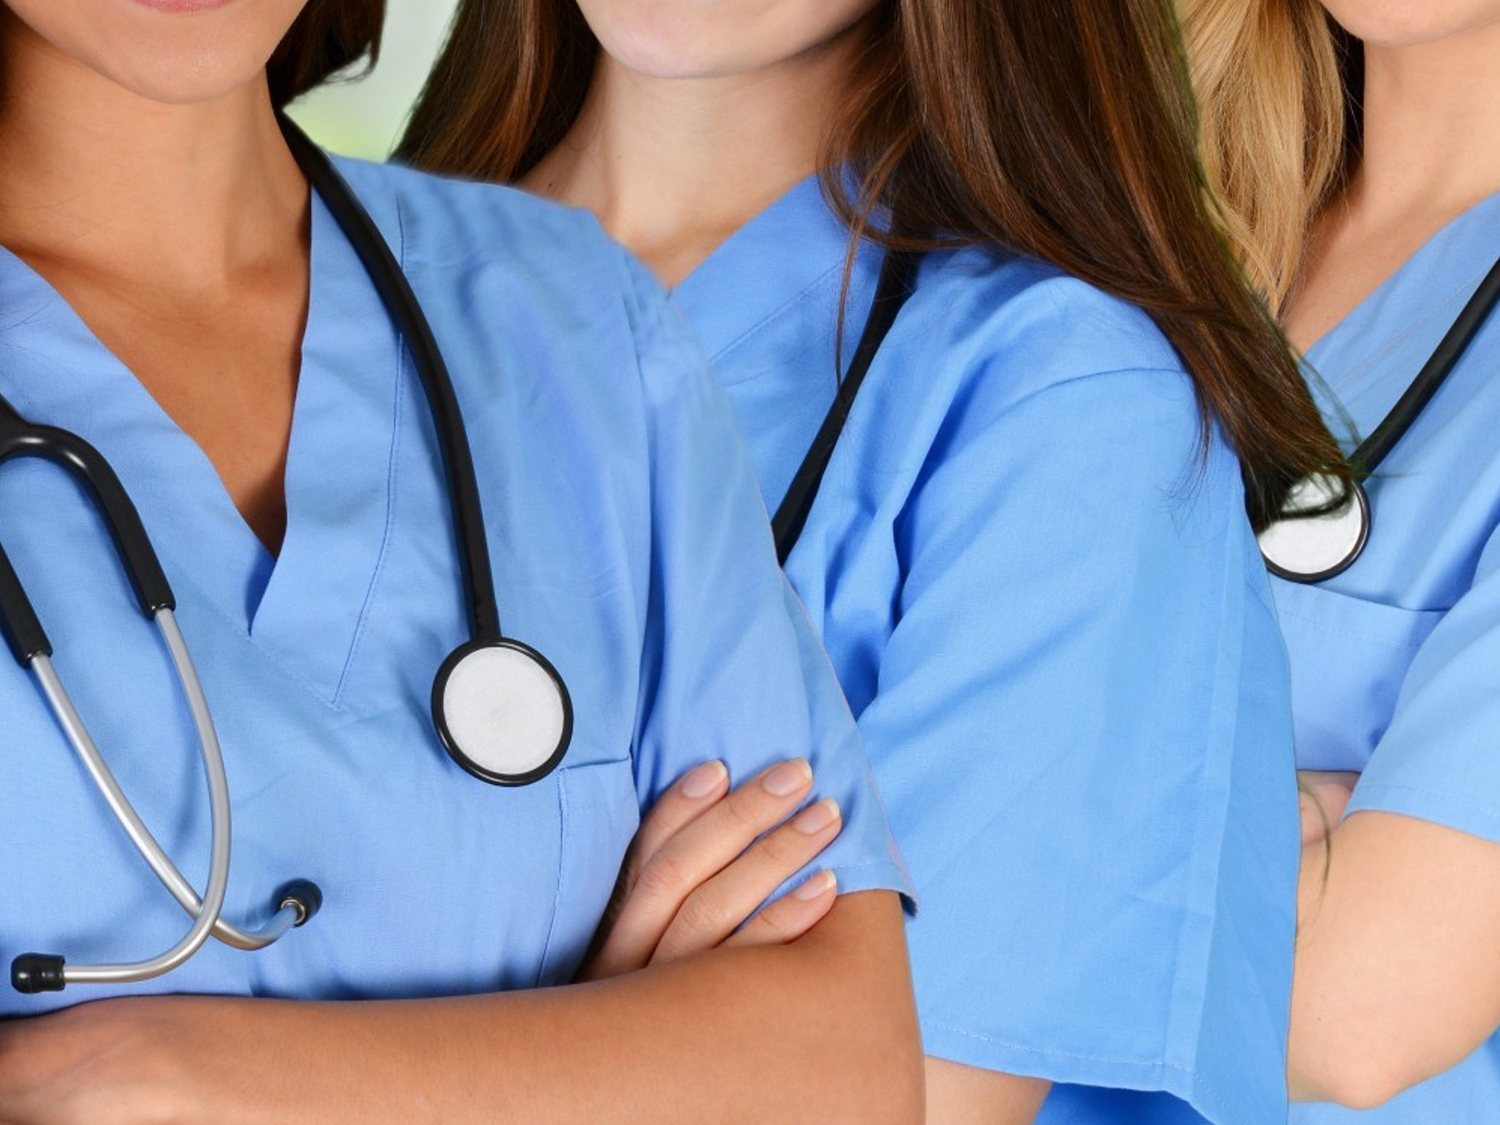 Investigan a cuatro enfermeras por un polémico video "burlándose de los muertos"